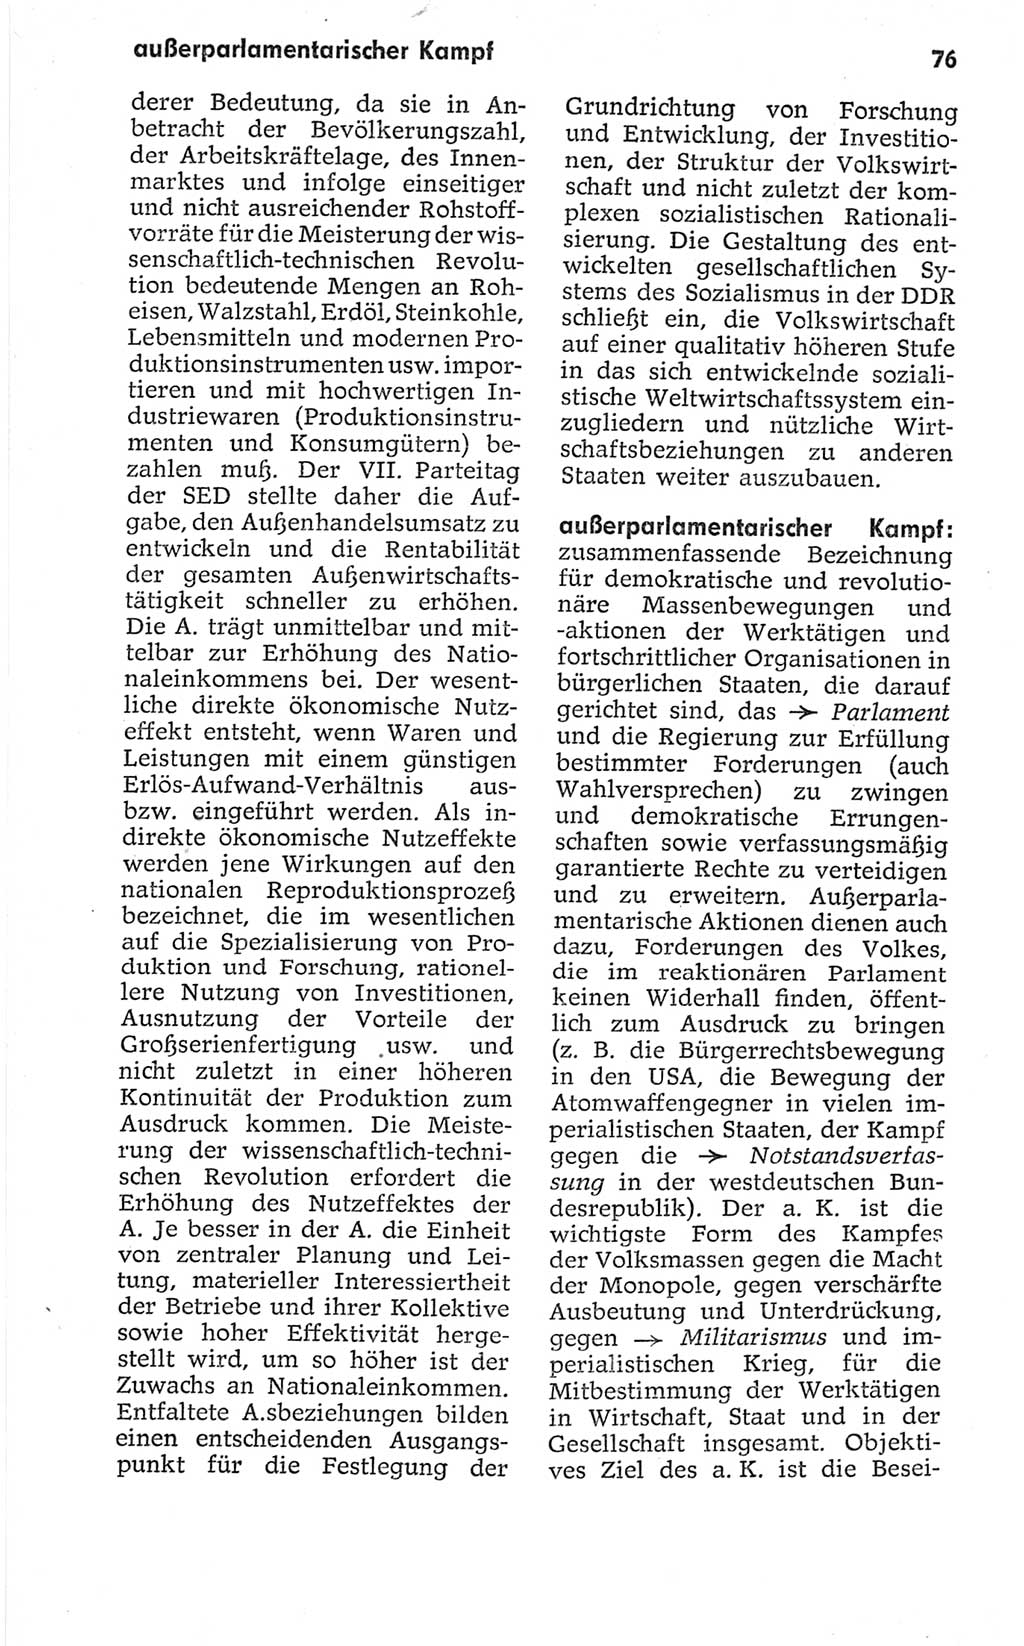 Kleines politisches Wörterbuch [Deutsche Demokratische Republik (DDR)] 1967, Seite 76 (Kl. pol. Wb. DDR 1967, S. 76)